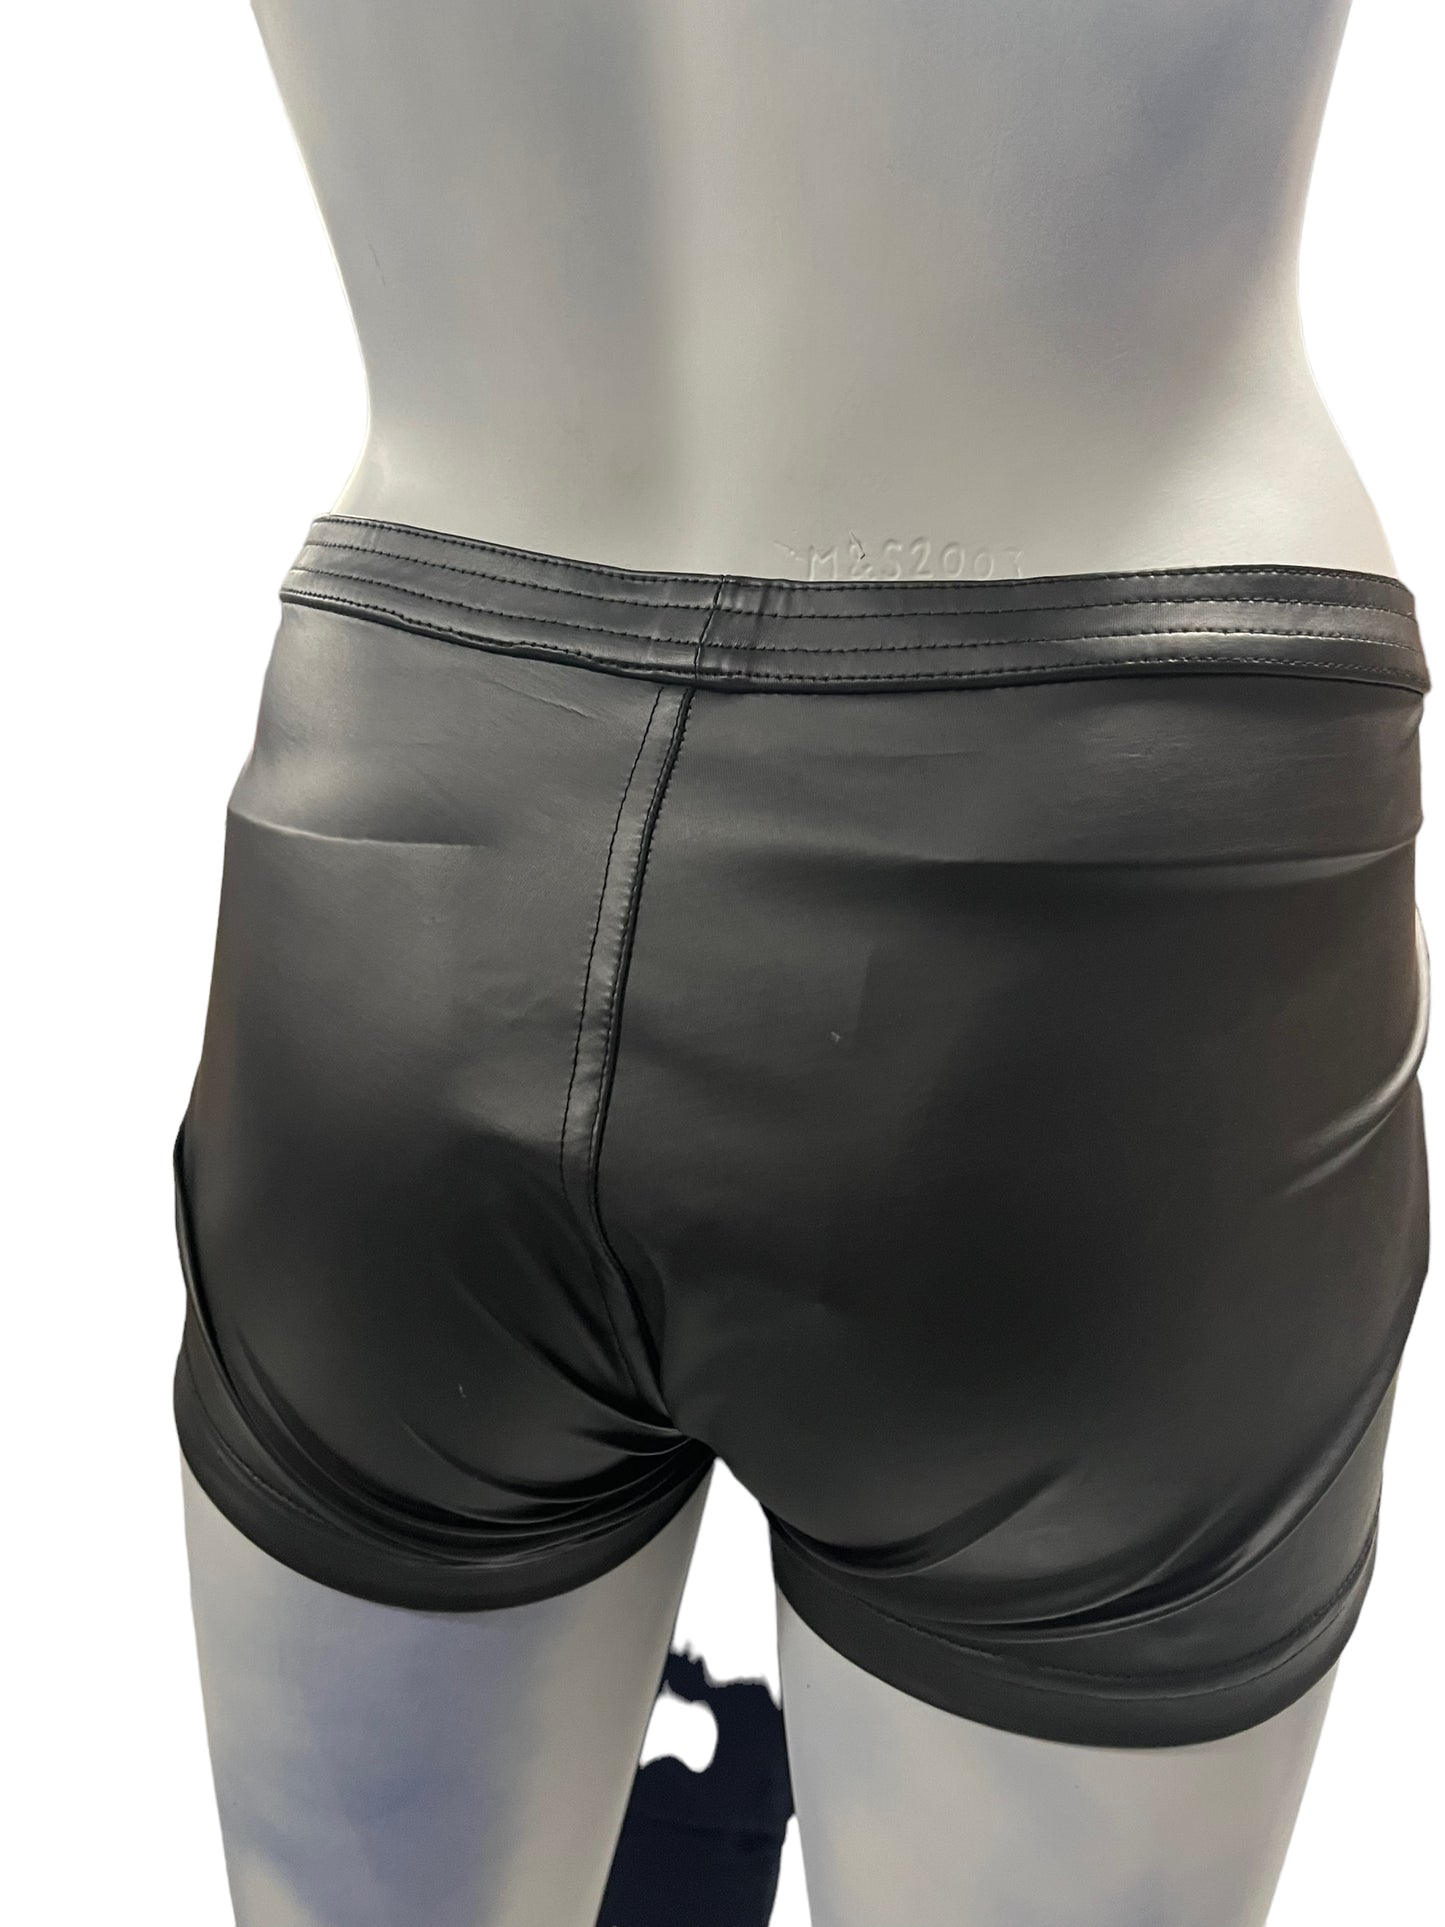 Noir - LL33 - Provocative Black Shorts - Size XXL